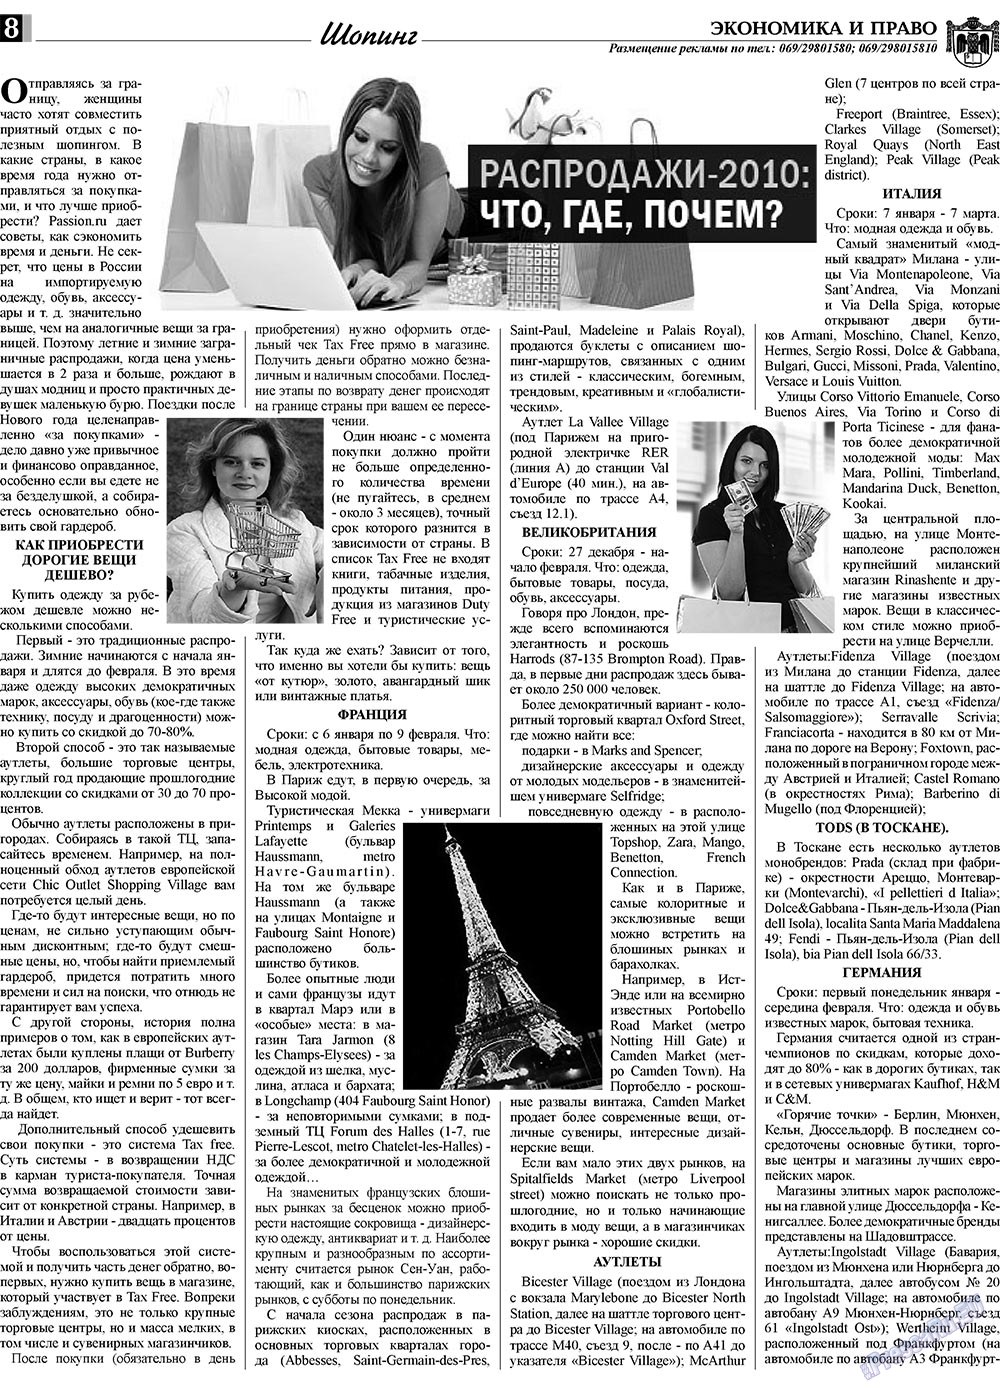 Экономика и право, газета. 2010 №2 стр.8